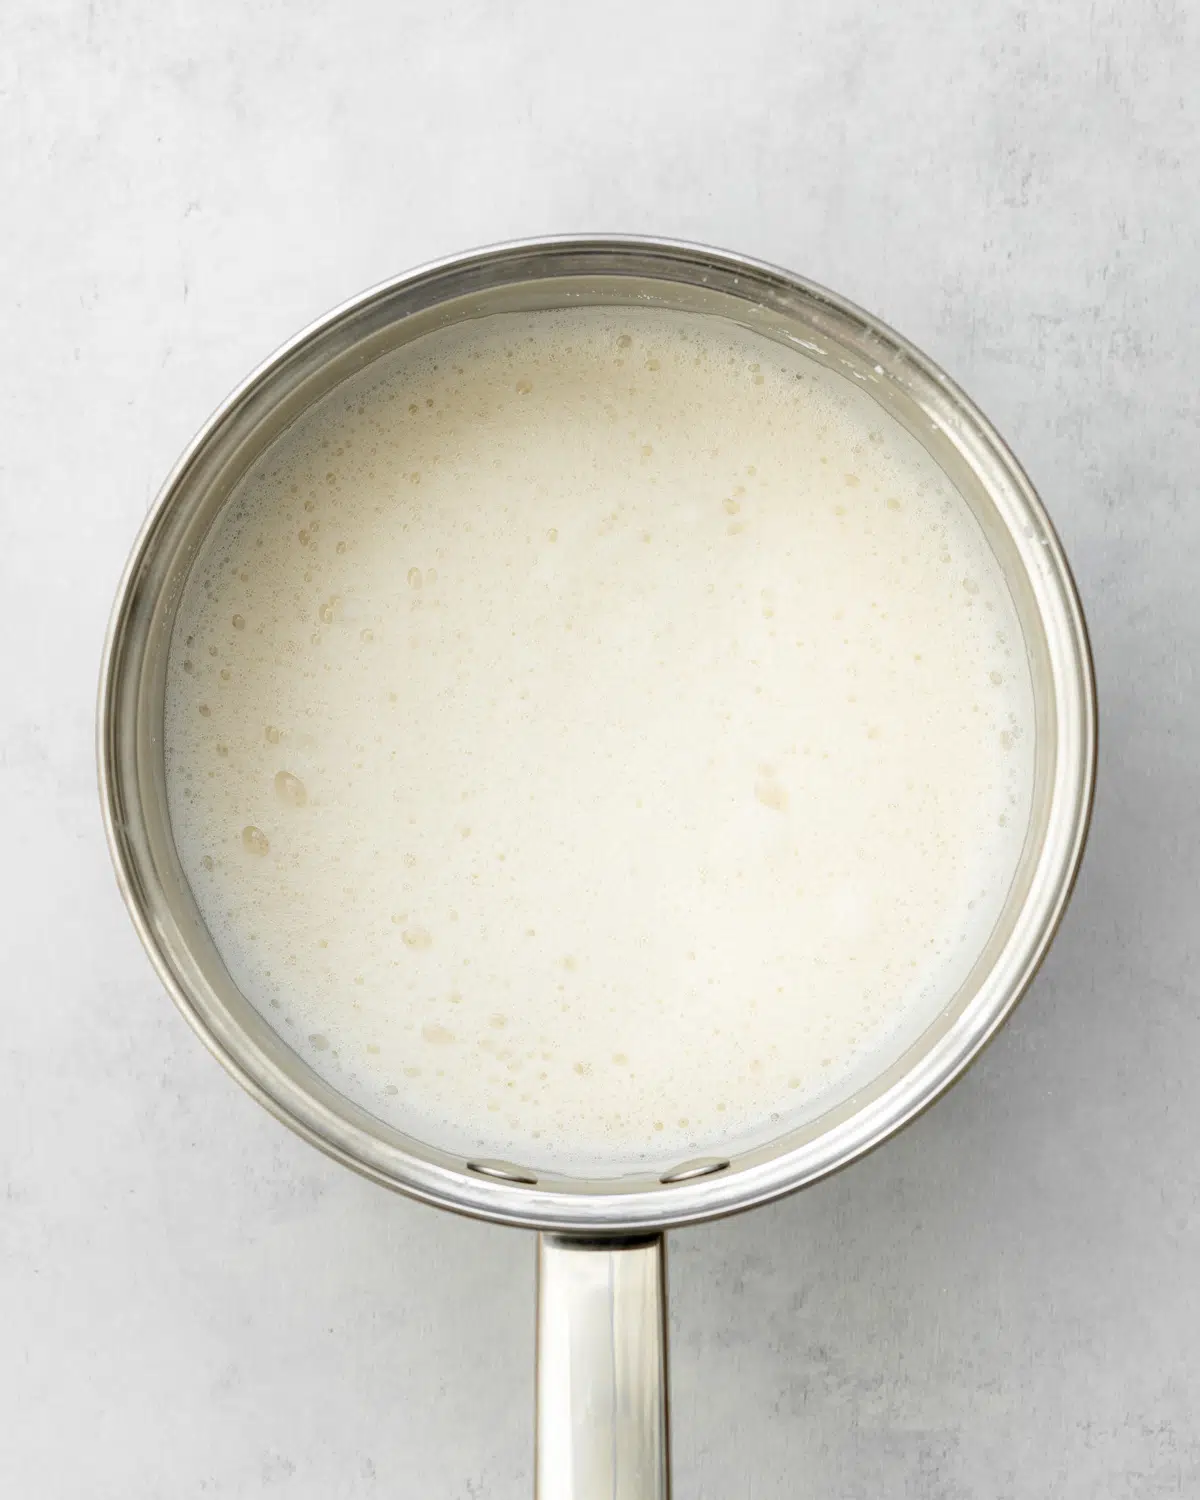 foamy milk in a saucepan.